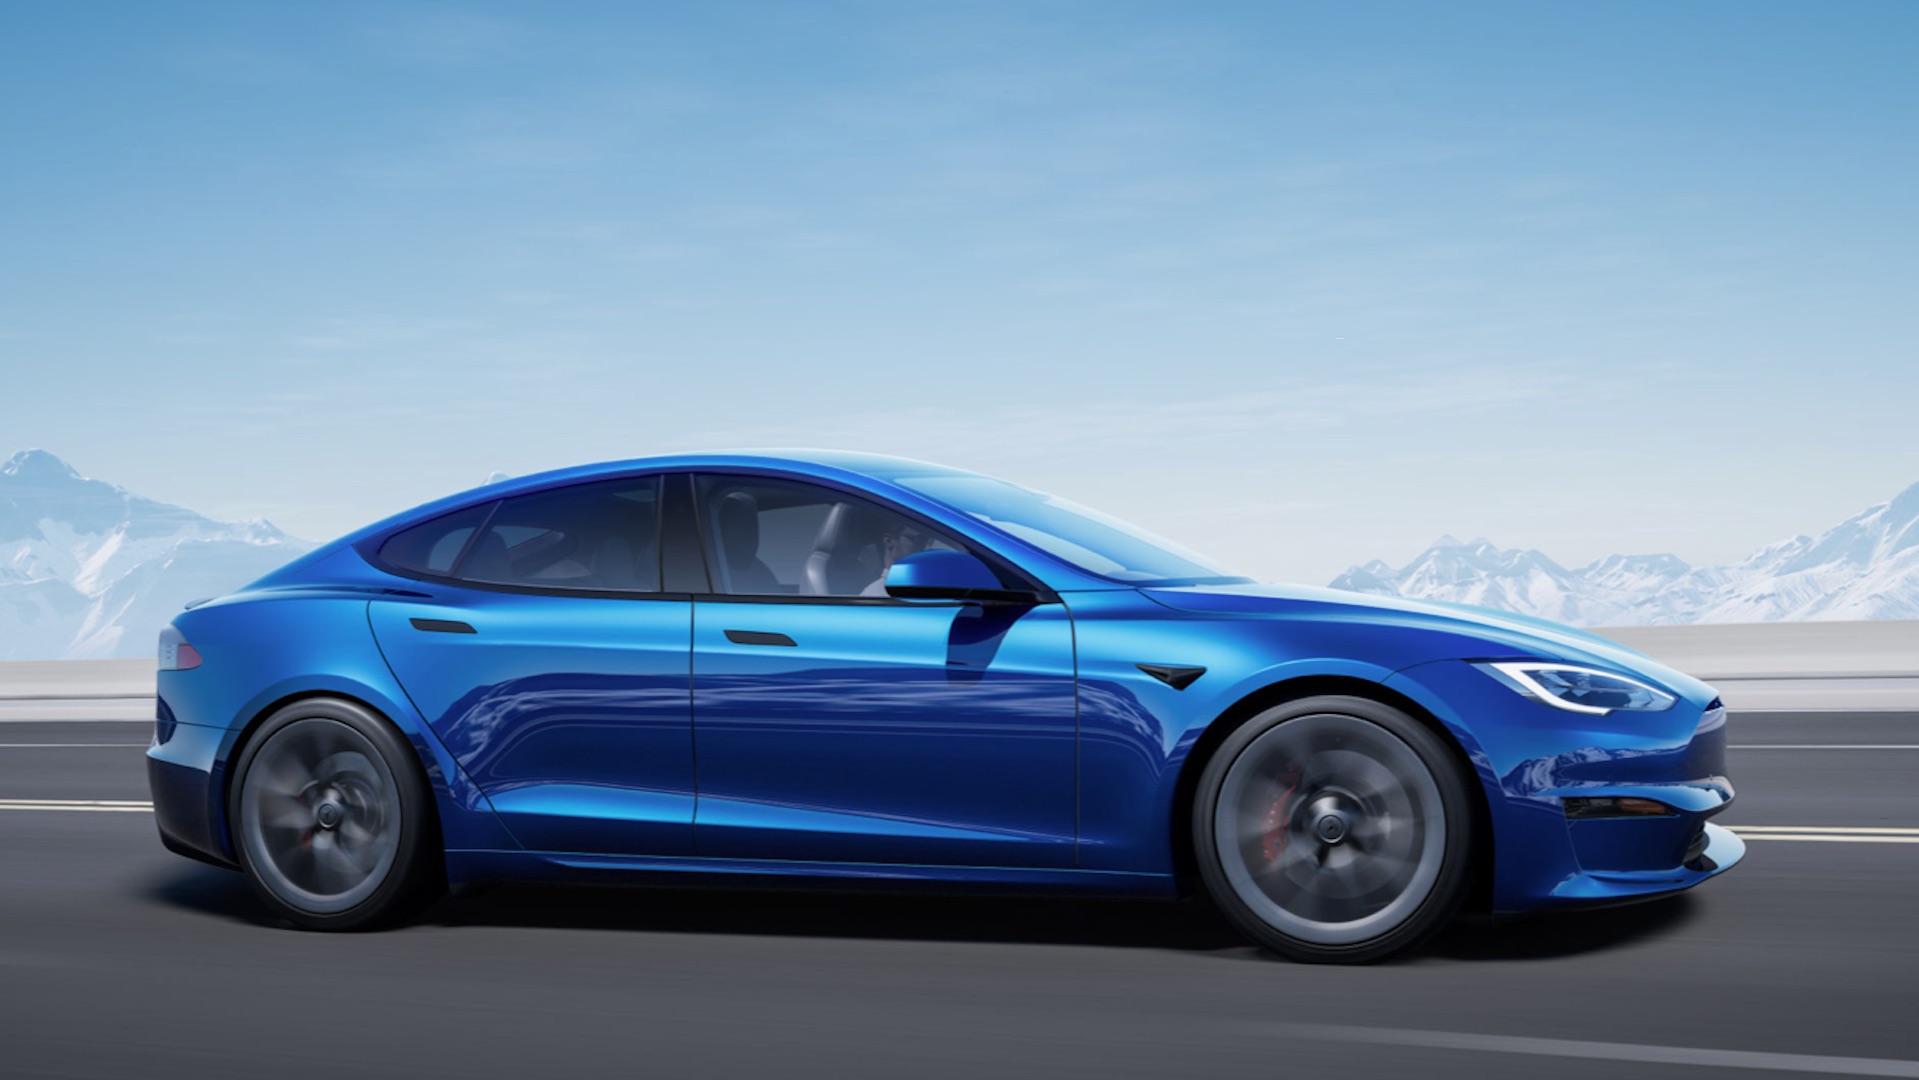 Prix Tesla Model 3 : les tarifs et la gamme France dévoilés